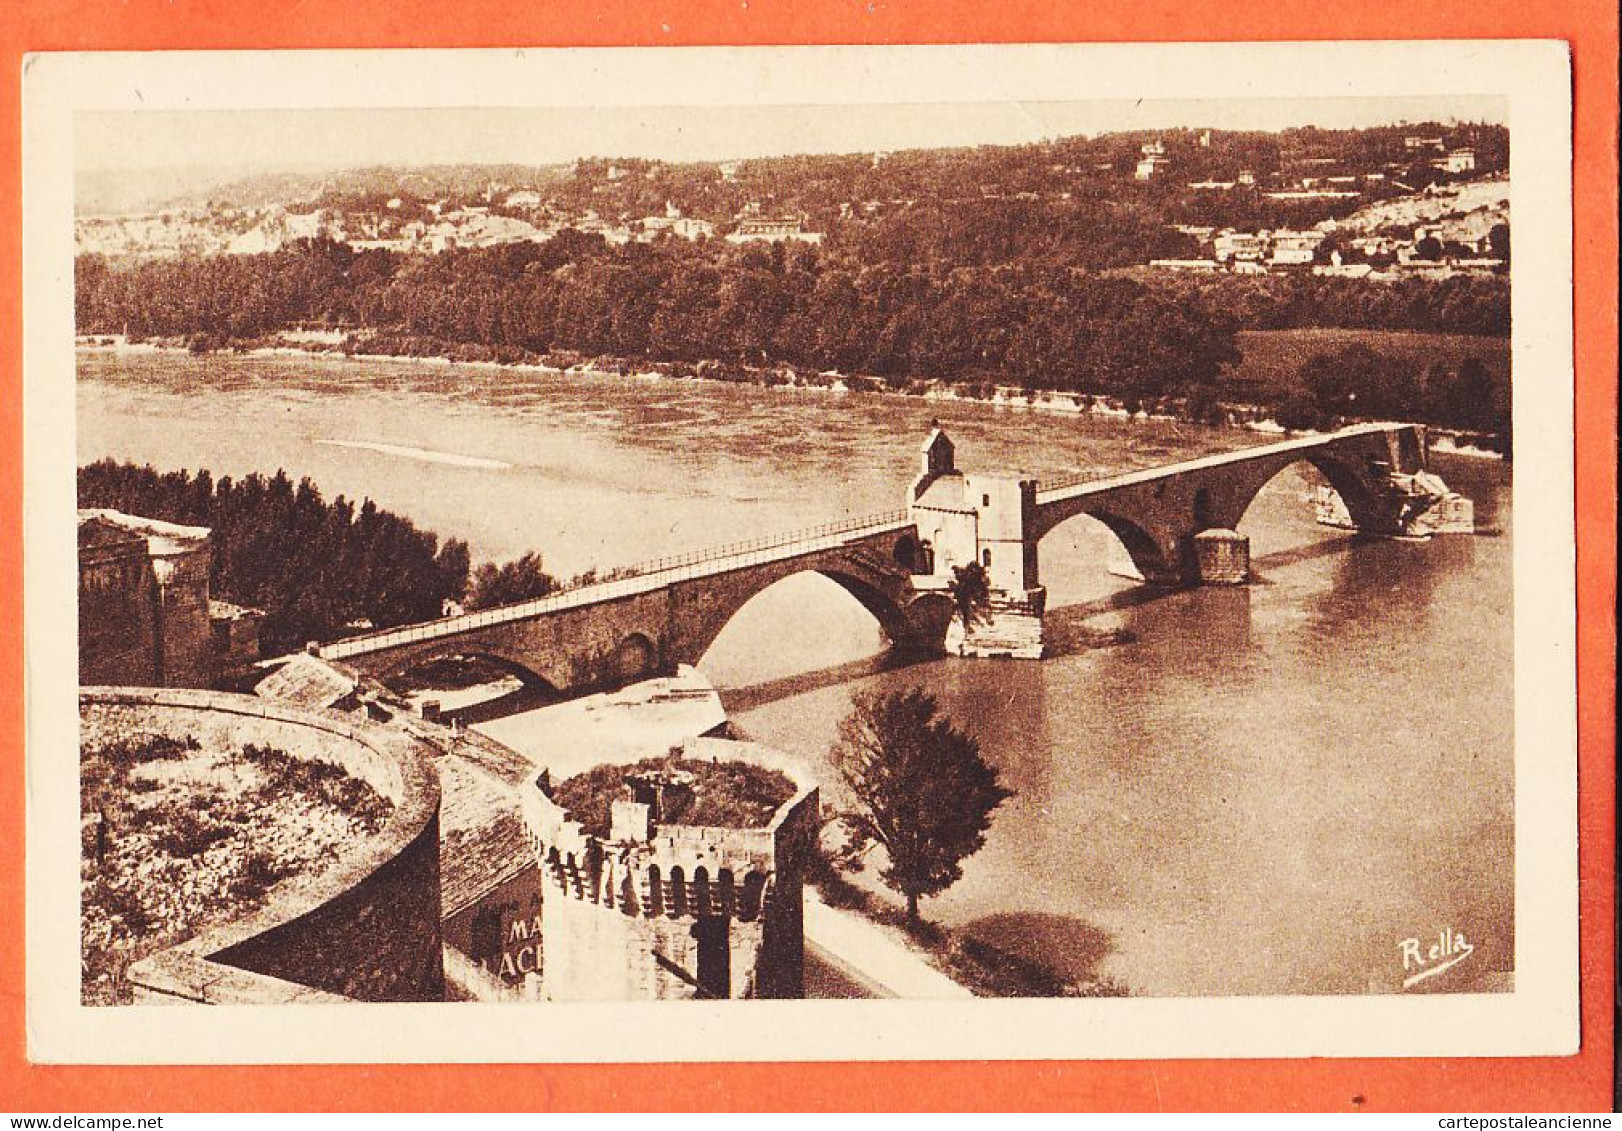 09885 / ⭐ AVIGNON 83-Vaucluse ◉ Pont SAINT-BENEZET 1930s ◉ RELLA 3.176 - Avignon (Palais & Pont)